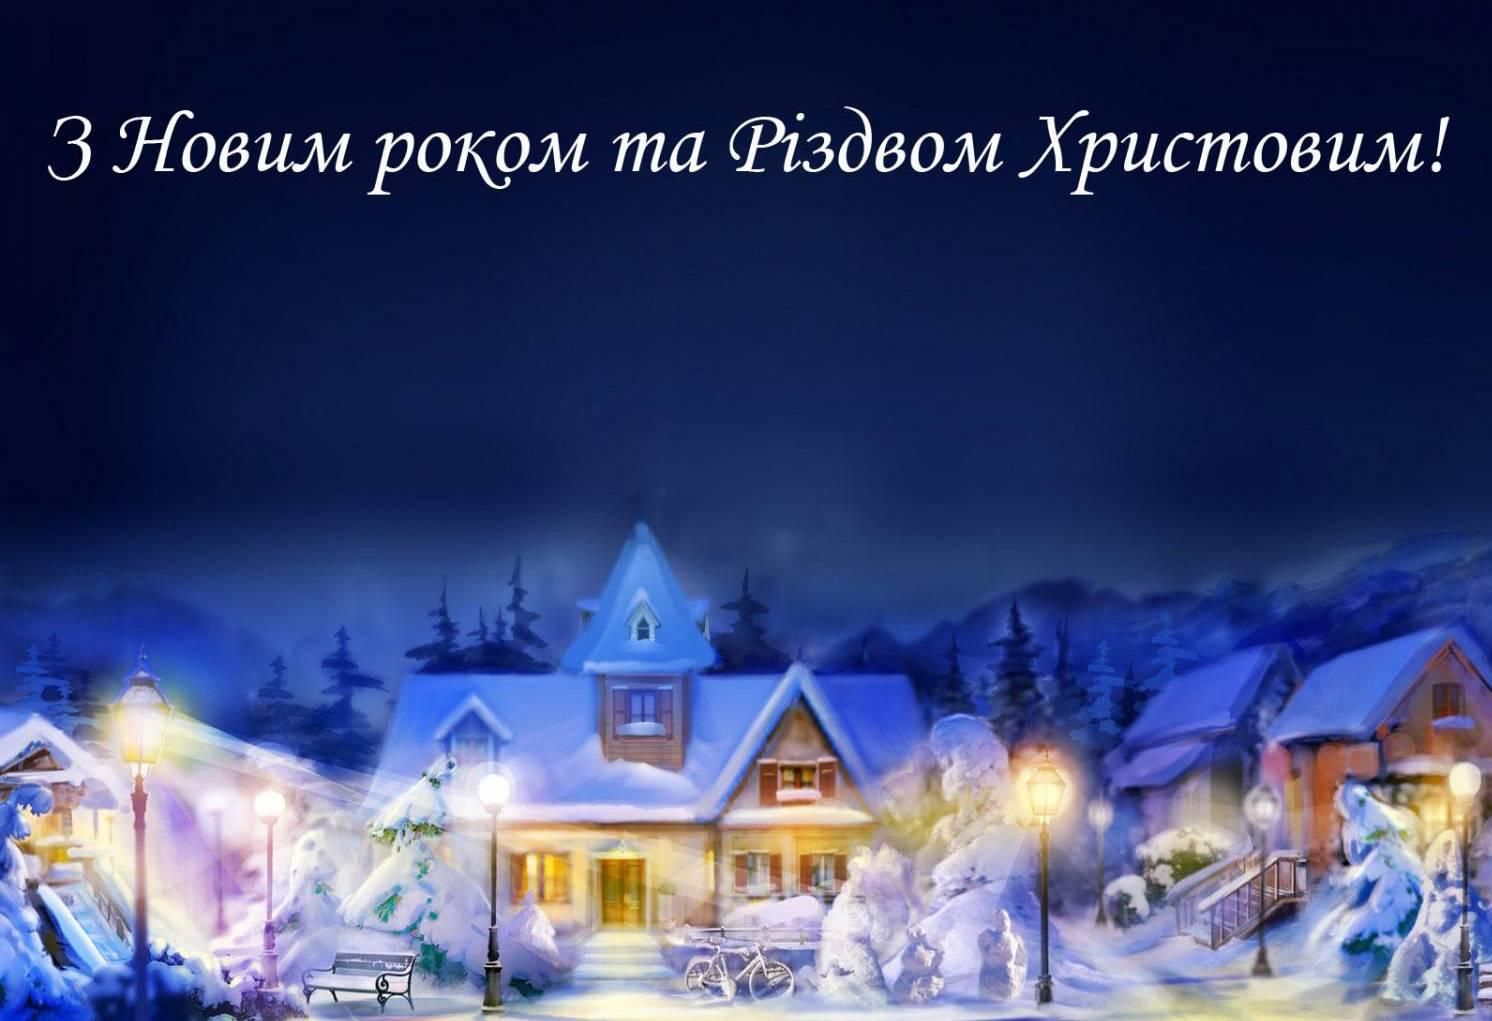 Привітати з Новим роком та Різдвом Христовим у прозі
